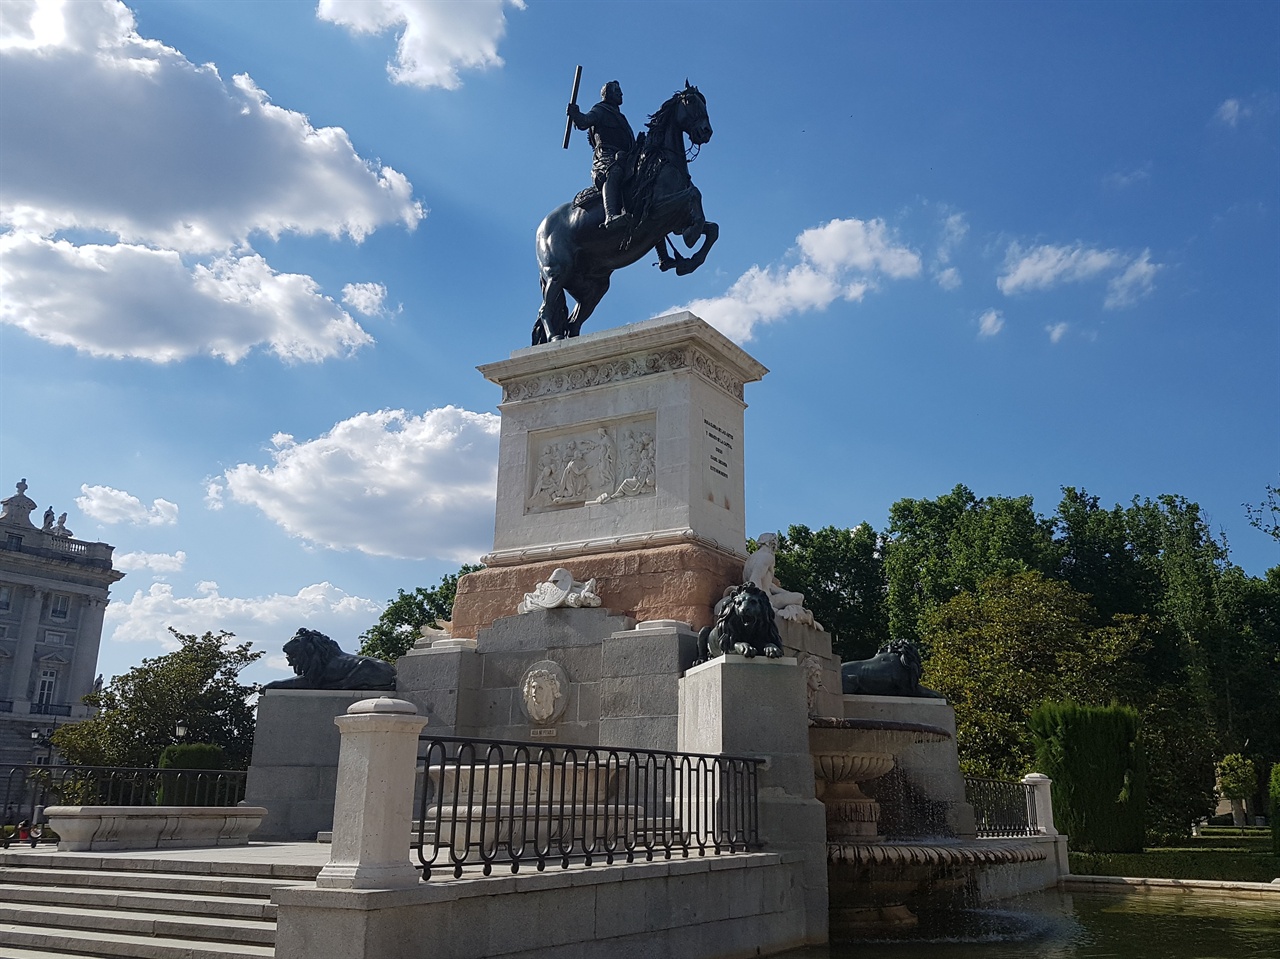 오리엔테 광장에는 펠리페 4세 동상이 광장 중심에 서있습니다. 펠리페 4세는 1621~1665년에 스페인을 통치했던 국왕입니다. 